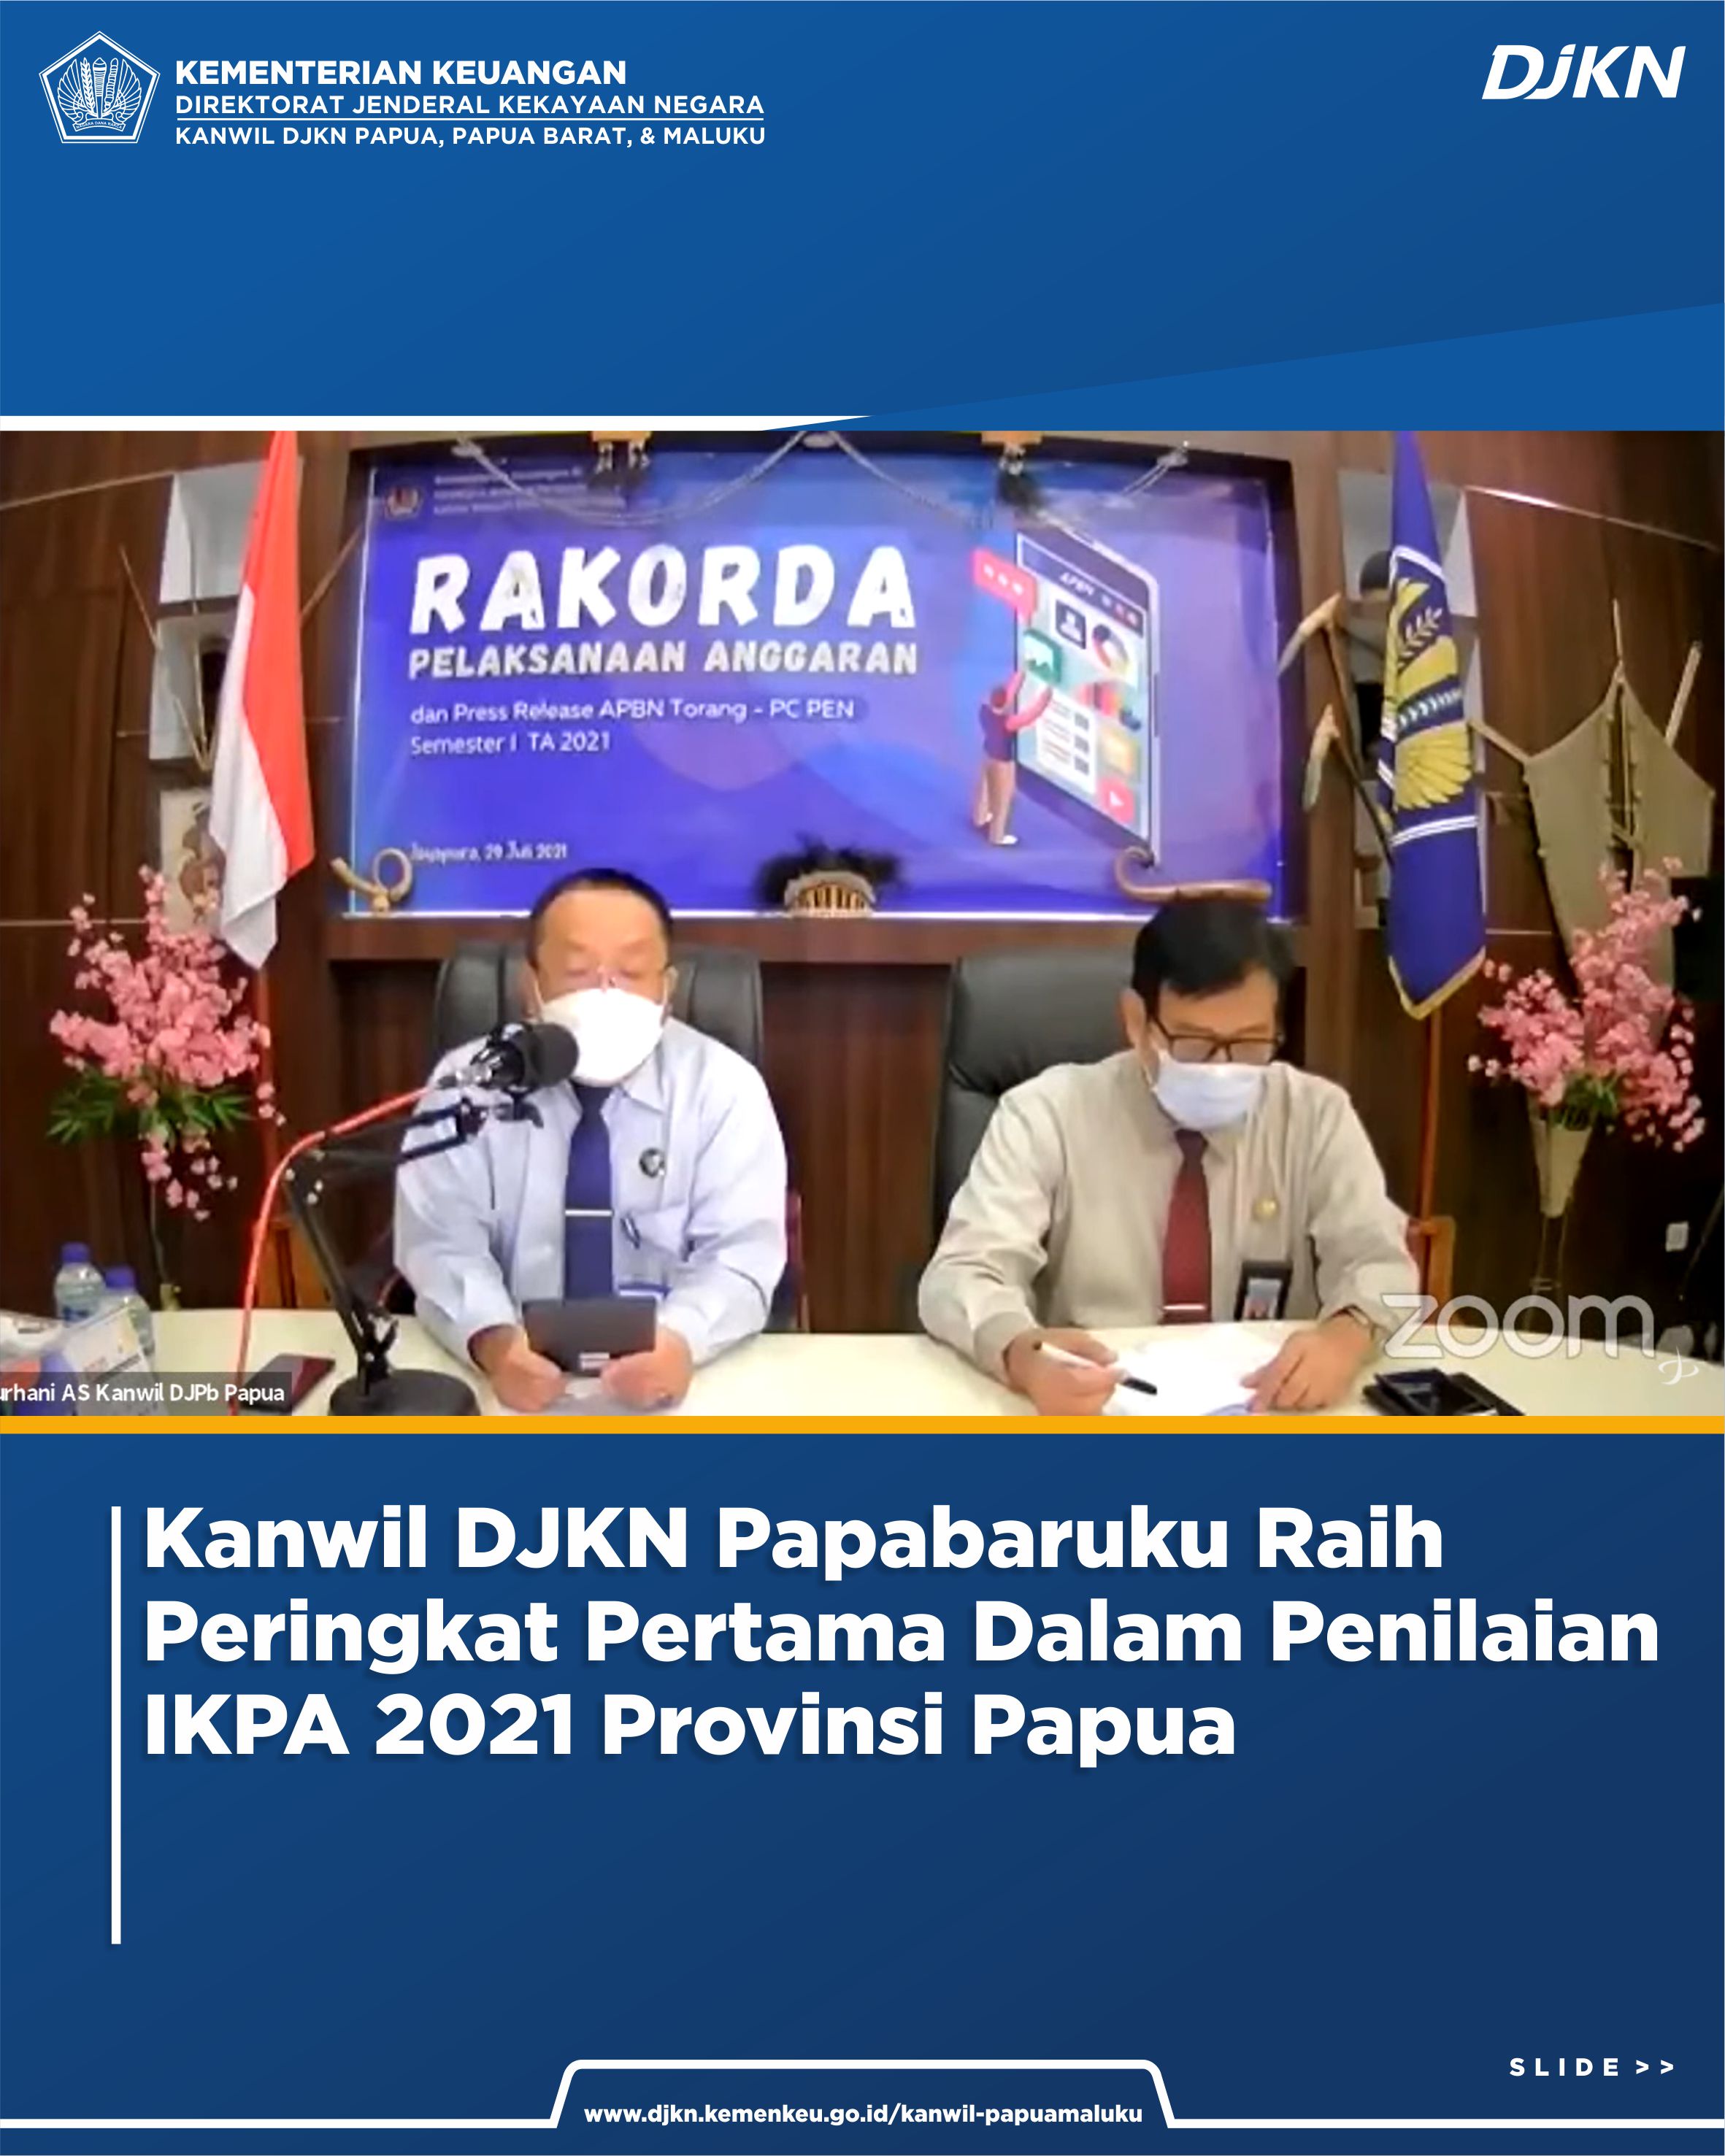 Kanwil DJKN Papua, Papua Barat, dan Maluku Meraih Penghargaan Terbaik Pertama dalam Penilaian IKPA 2021 Provinsi Papua